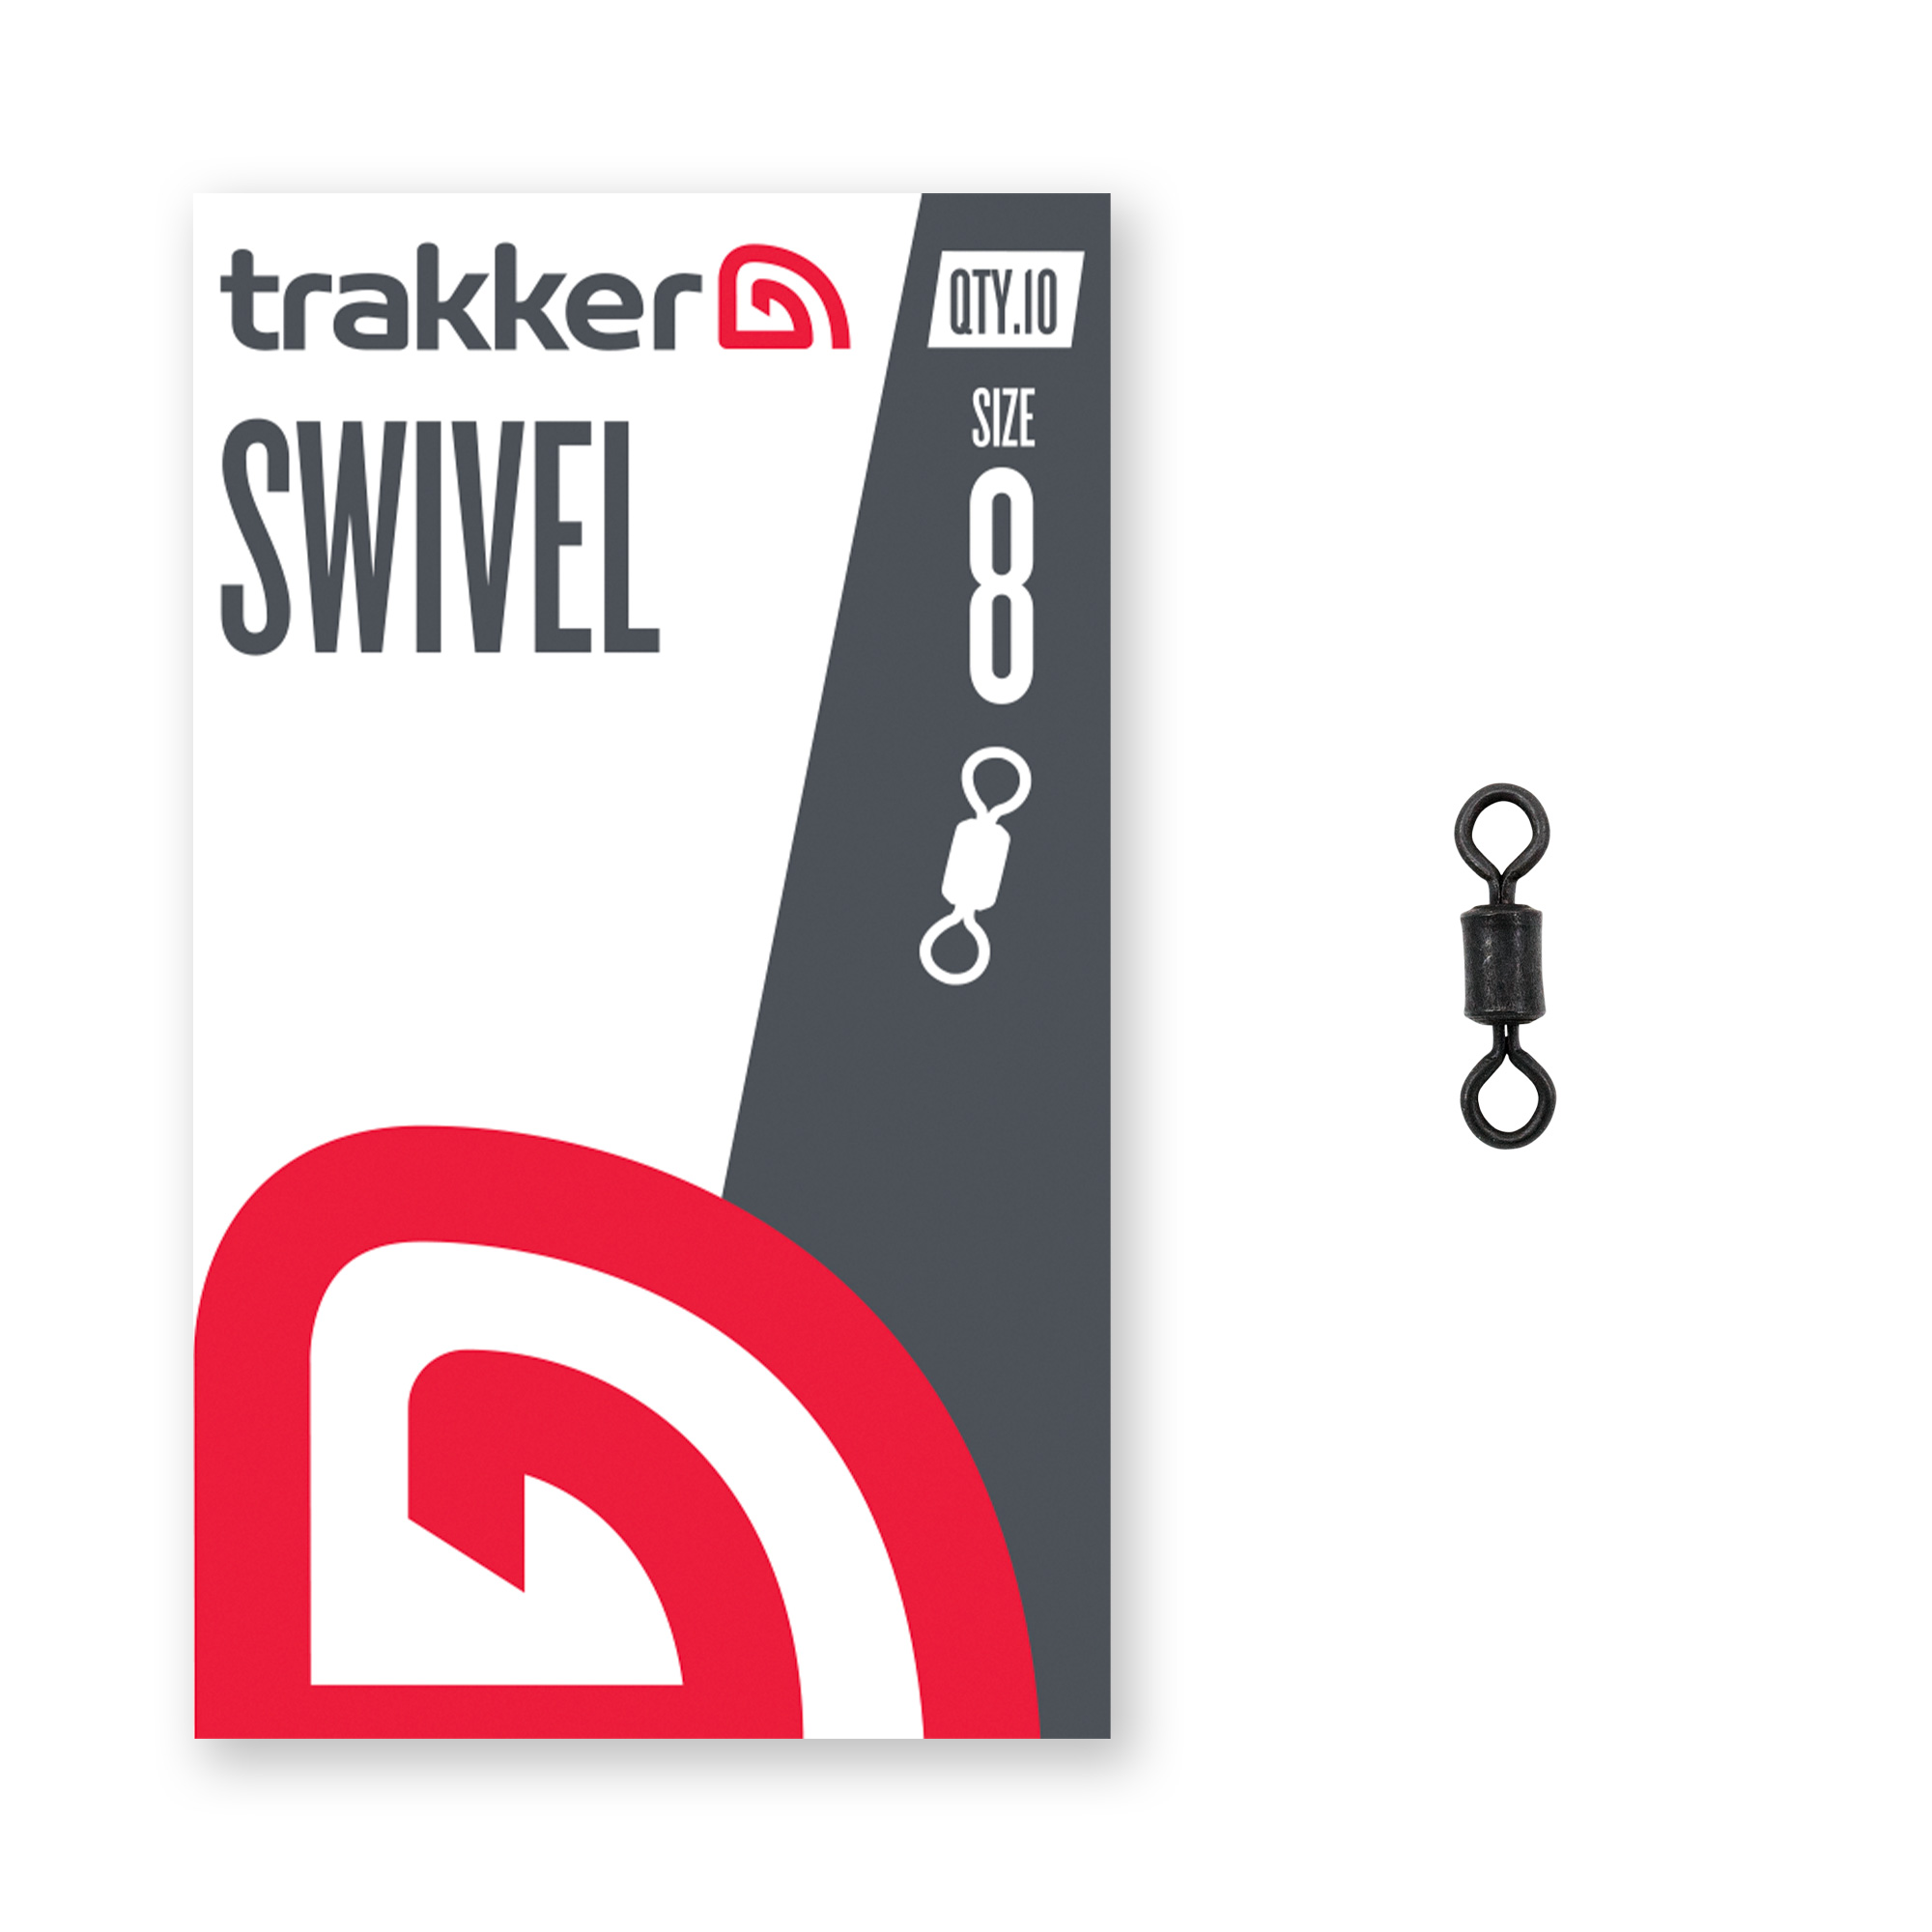 Trakker Swivel (Size 8) TPx5